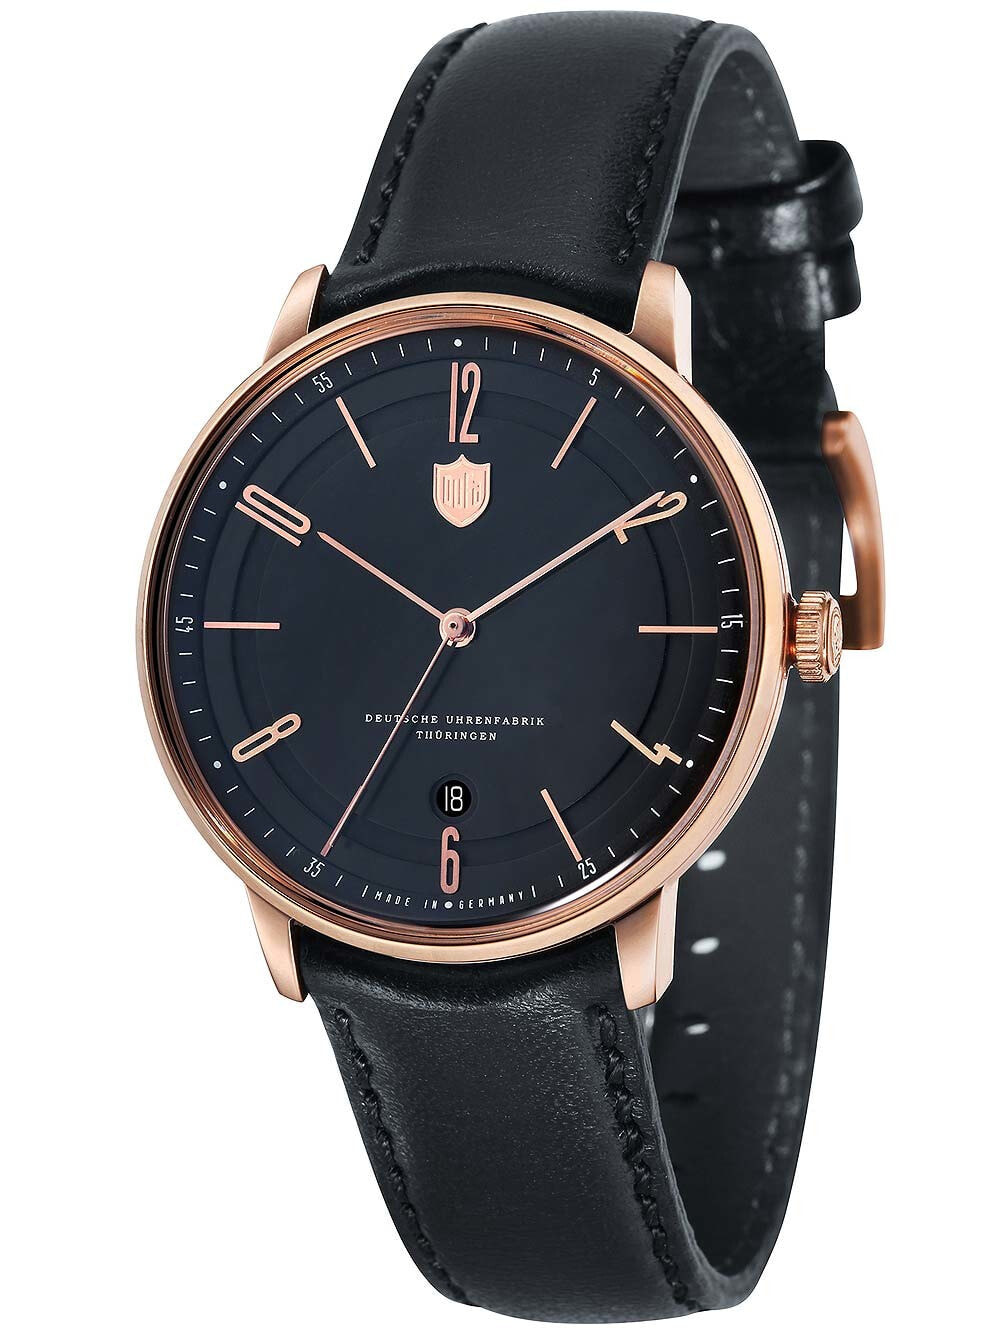 Мужские наручные часы с черным кожаным ремешком Dufa DF-9016-04 Bayer Swiss Made Automatic 40mm 3 ATM